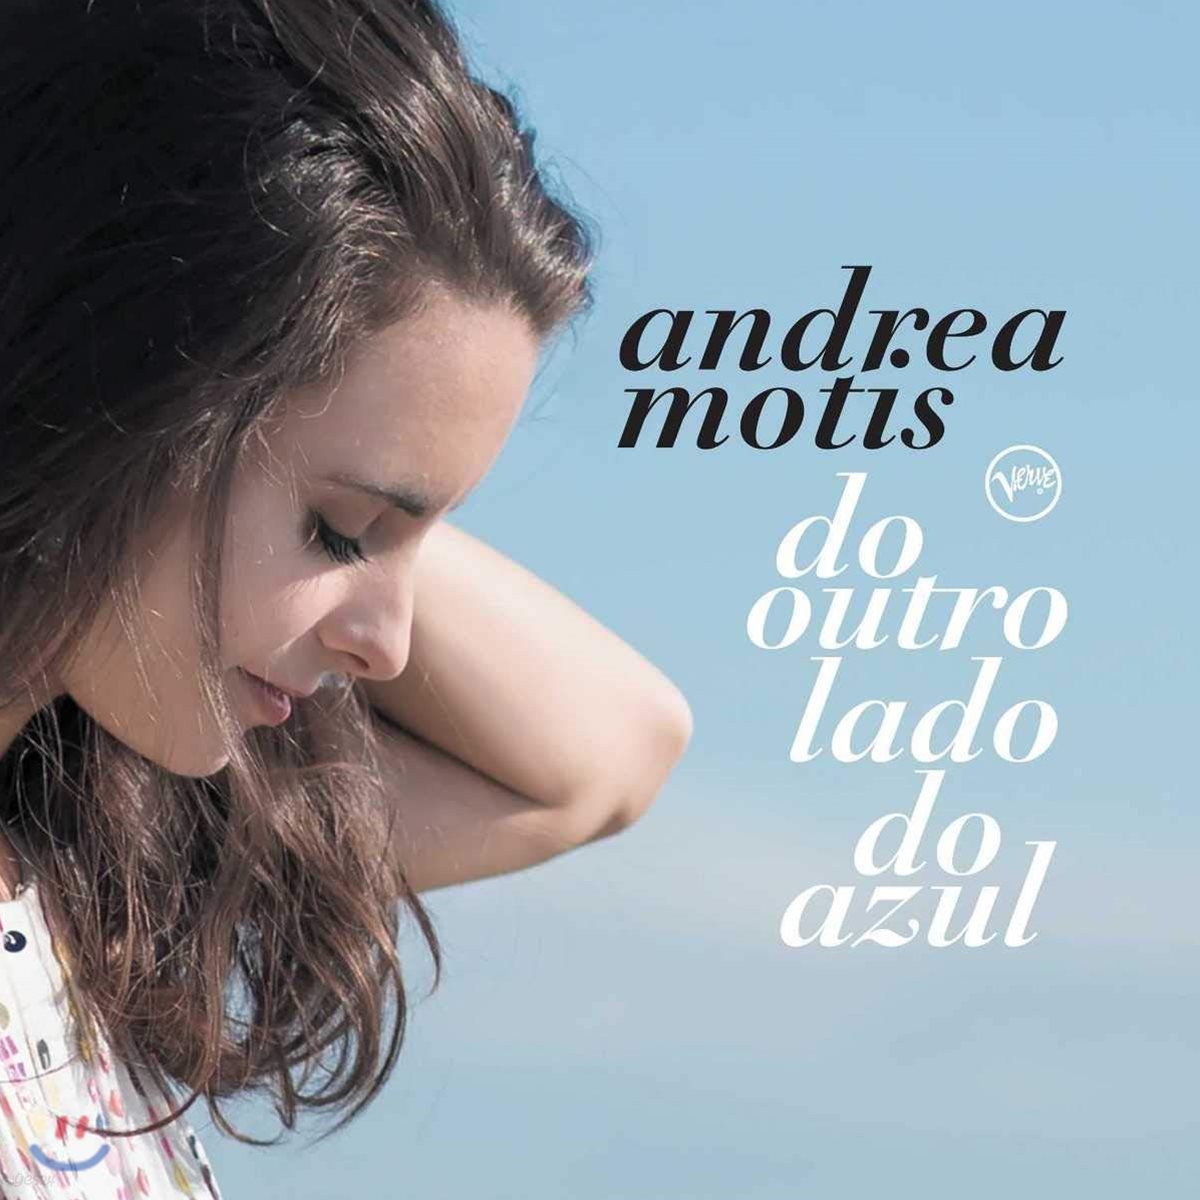 Andrea Motis (안드레아 모티스) - Do Outro Lado Do Azul